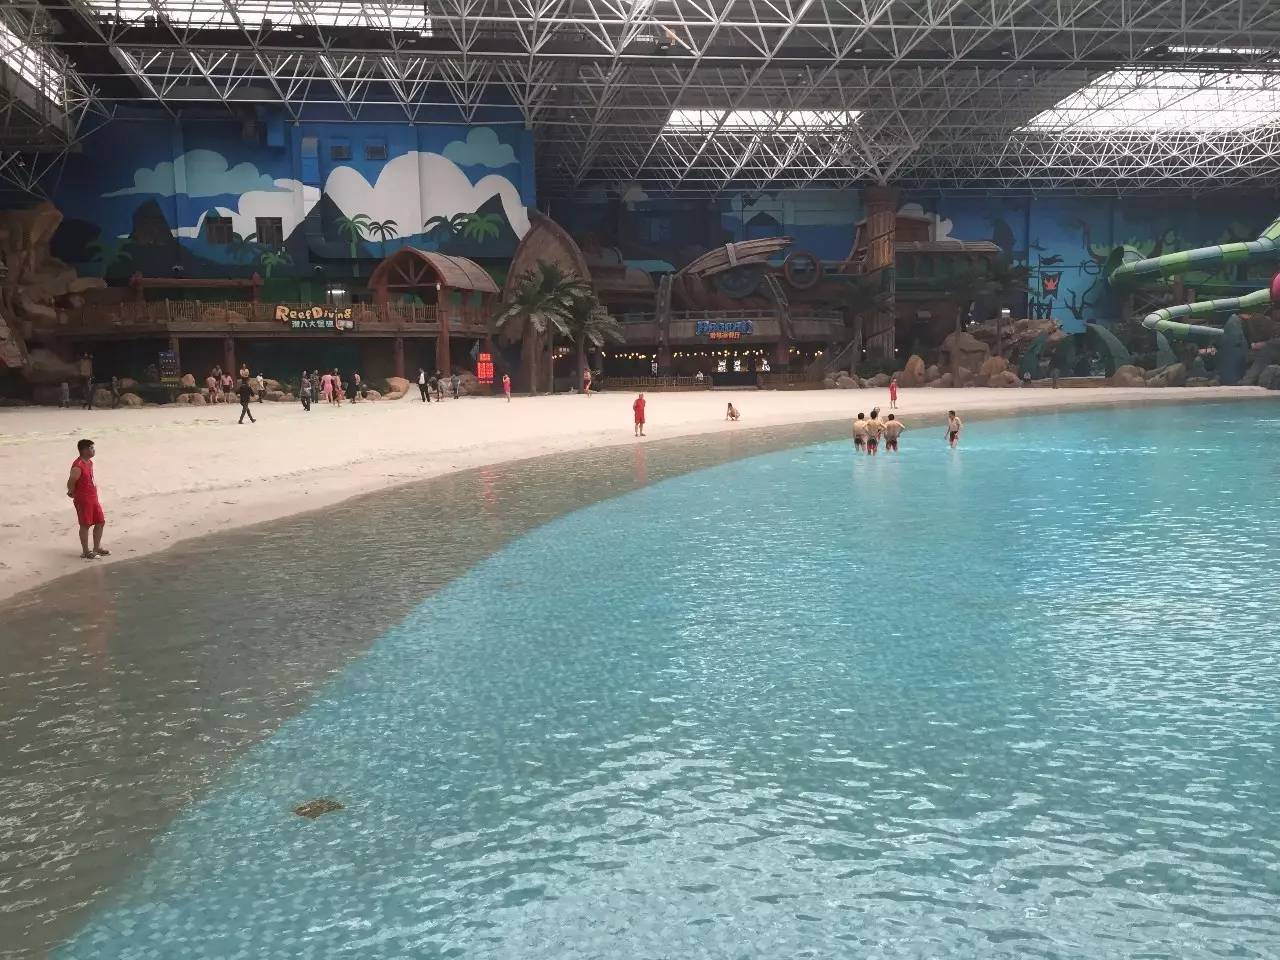 全球最大室内沙滩水世界明天开幕,12米以下的孩子免票!